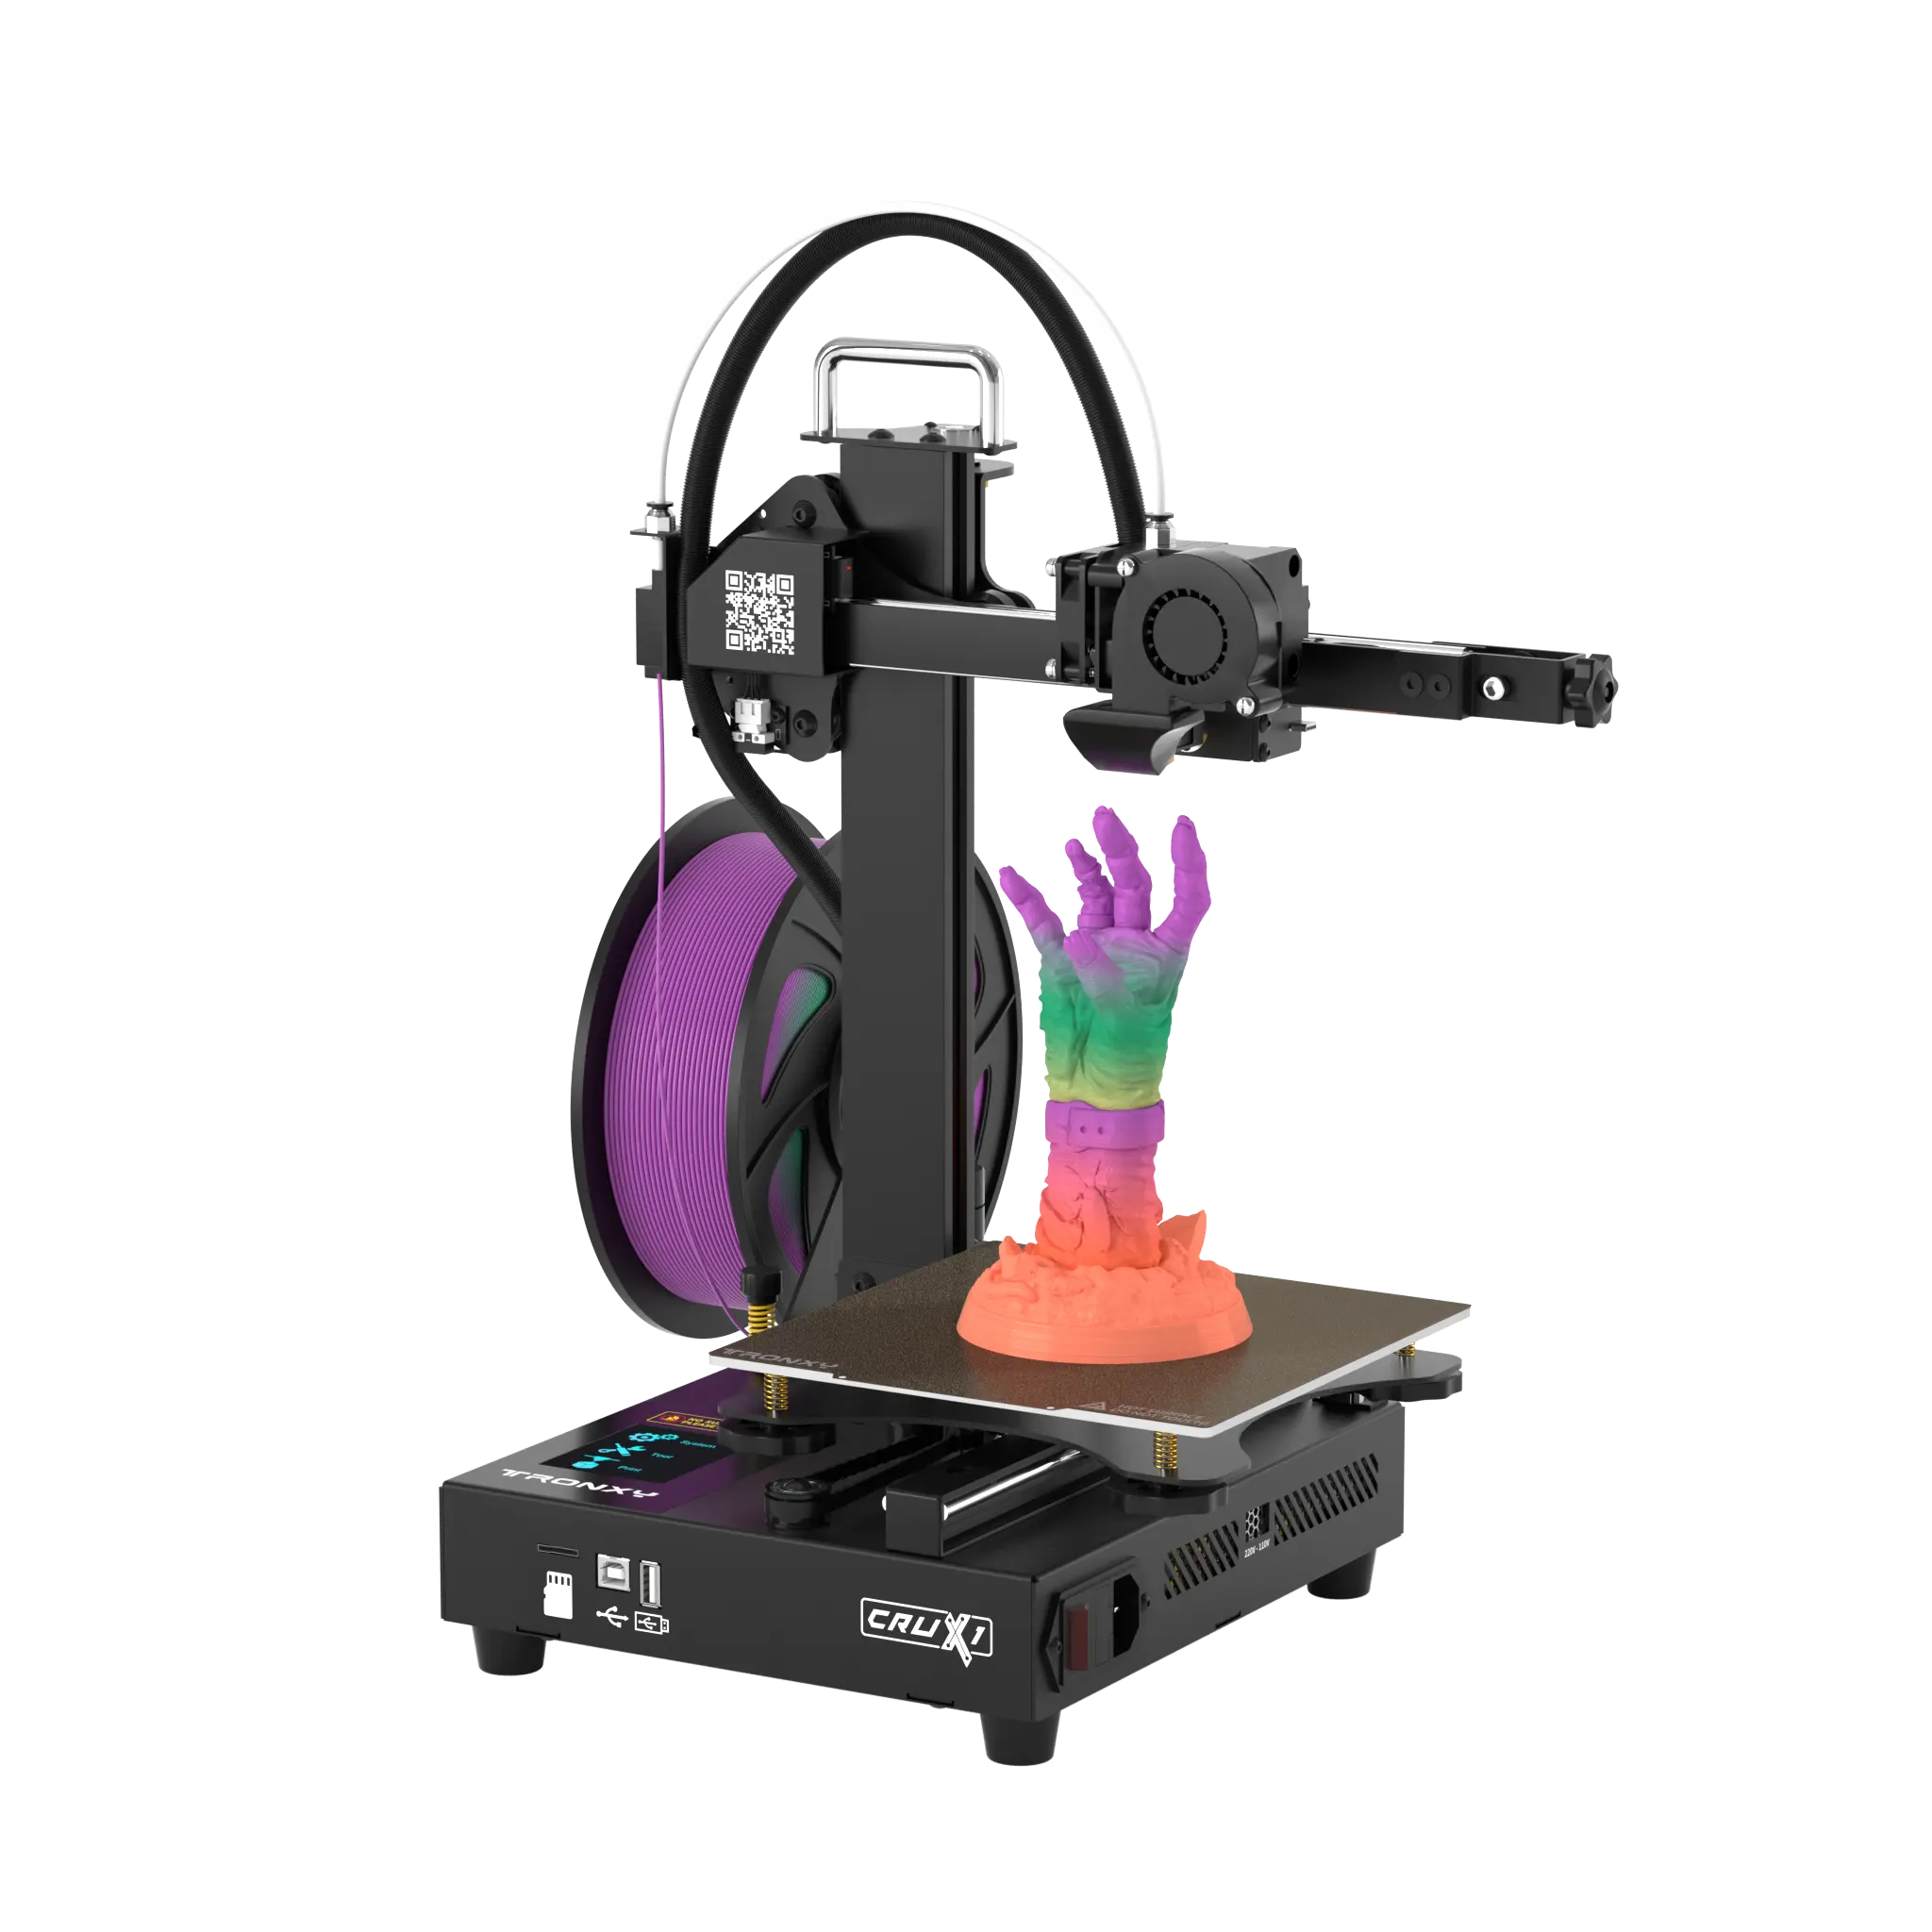 Crux 1 mini 3d machine Direct printer 3 d machinery aluminum 3d printer printing machine kids 3d printer best 2021